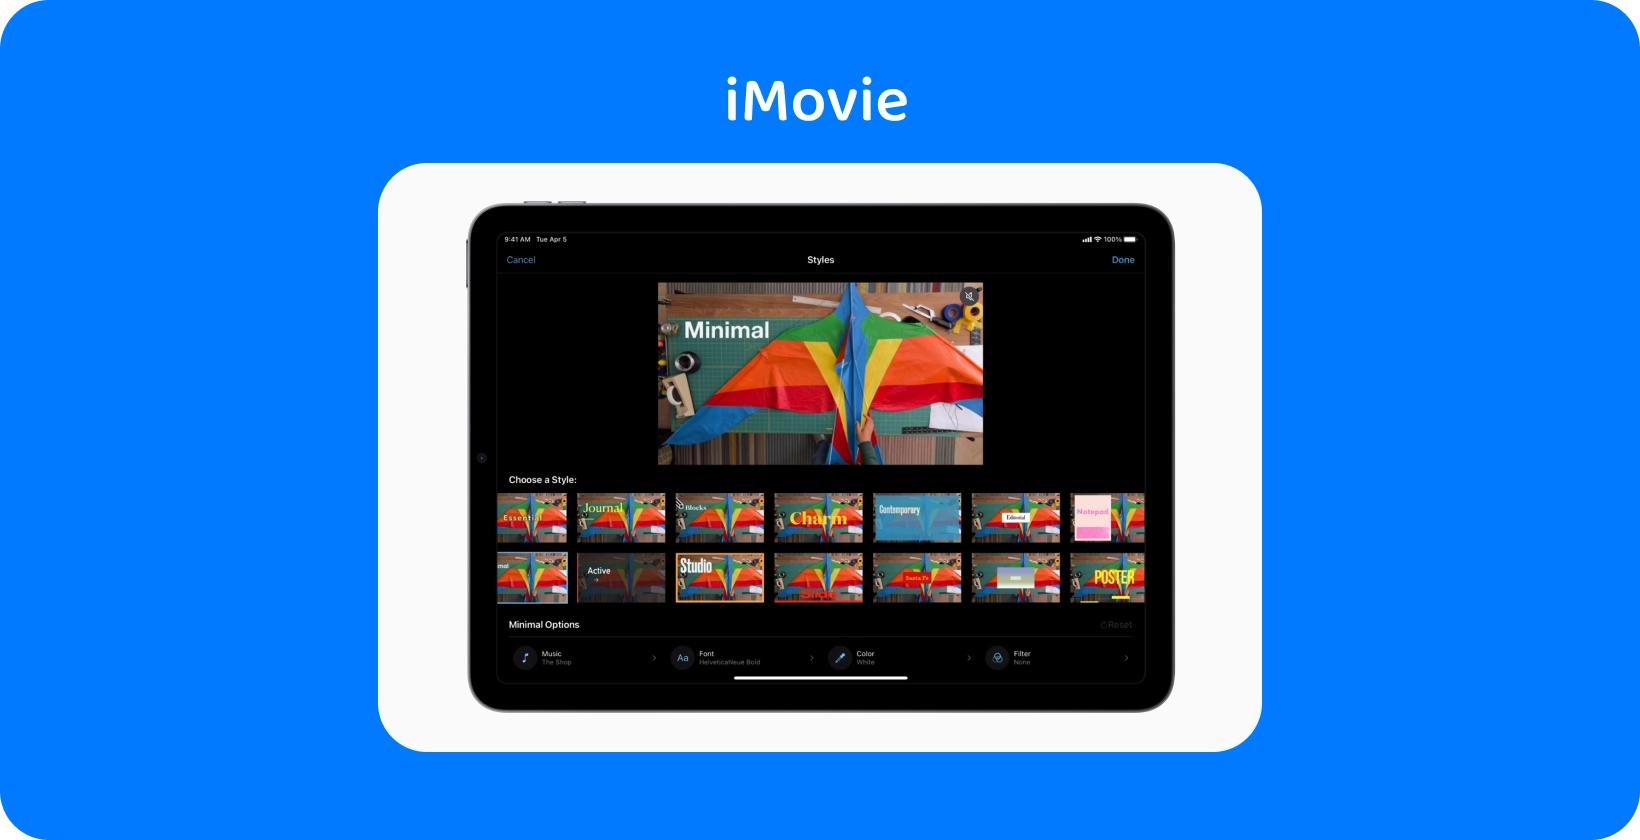 iMovie em um tablet exibindo vários estilos de edição de vídeo, com um projeto de pipa colorido definido para o tema 'Minimal'.